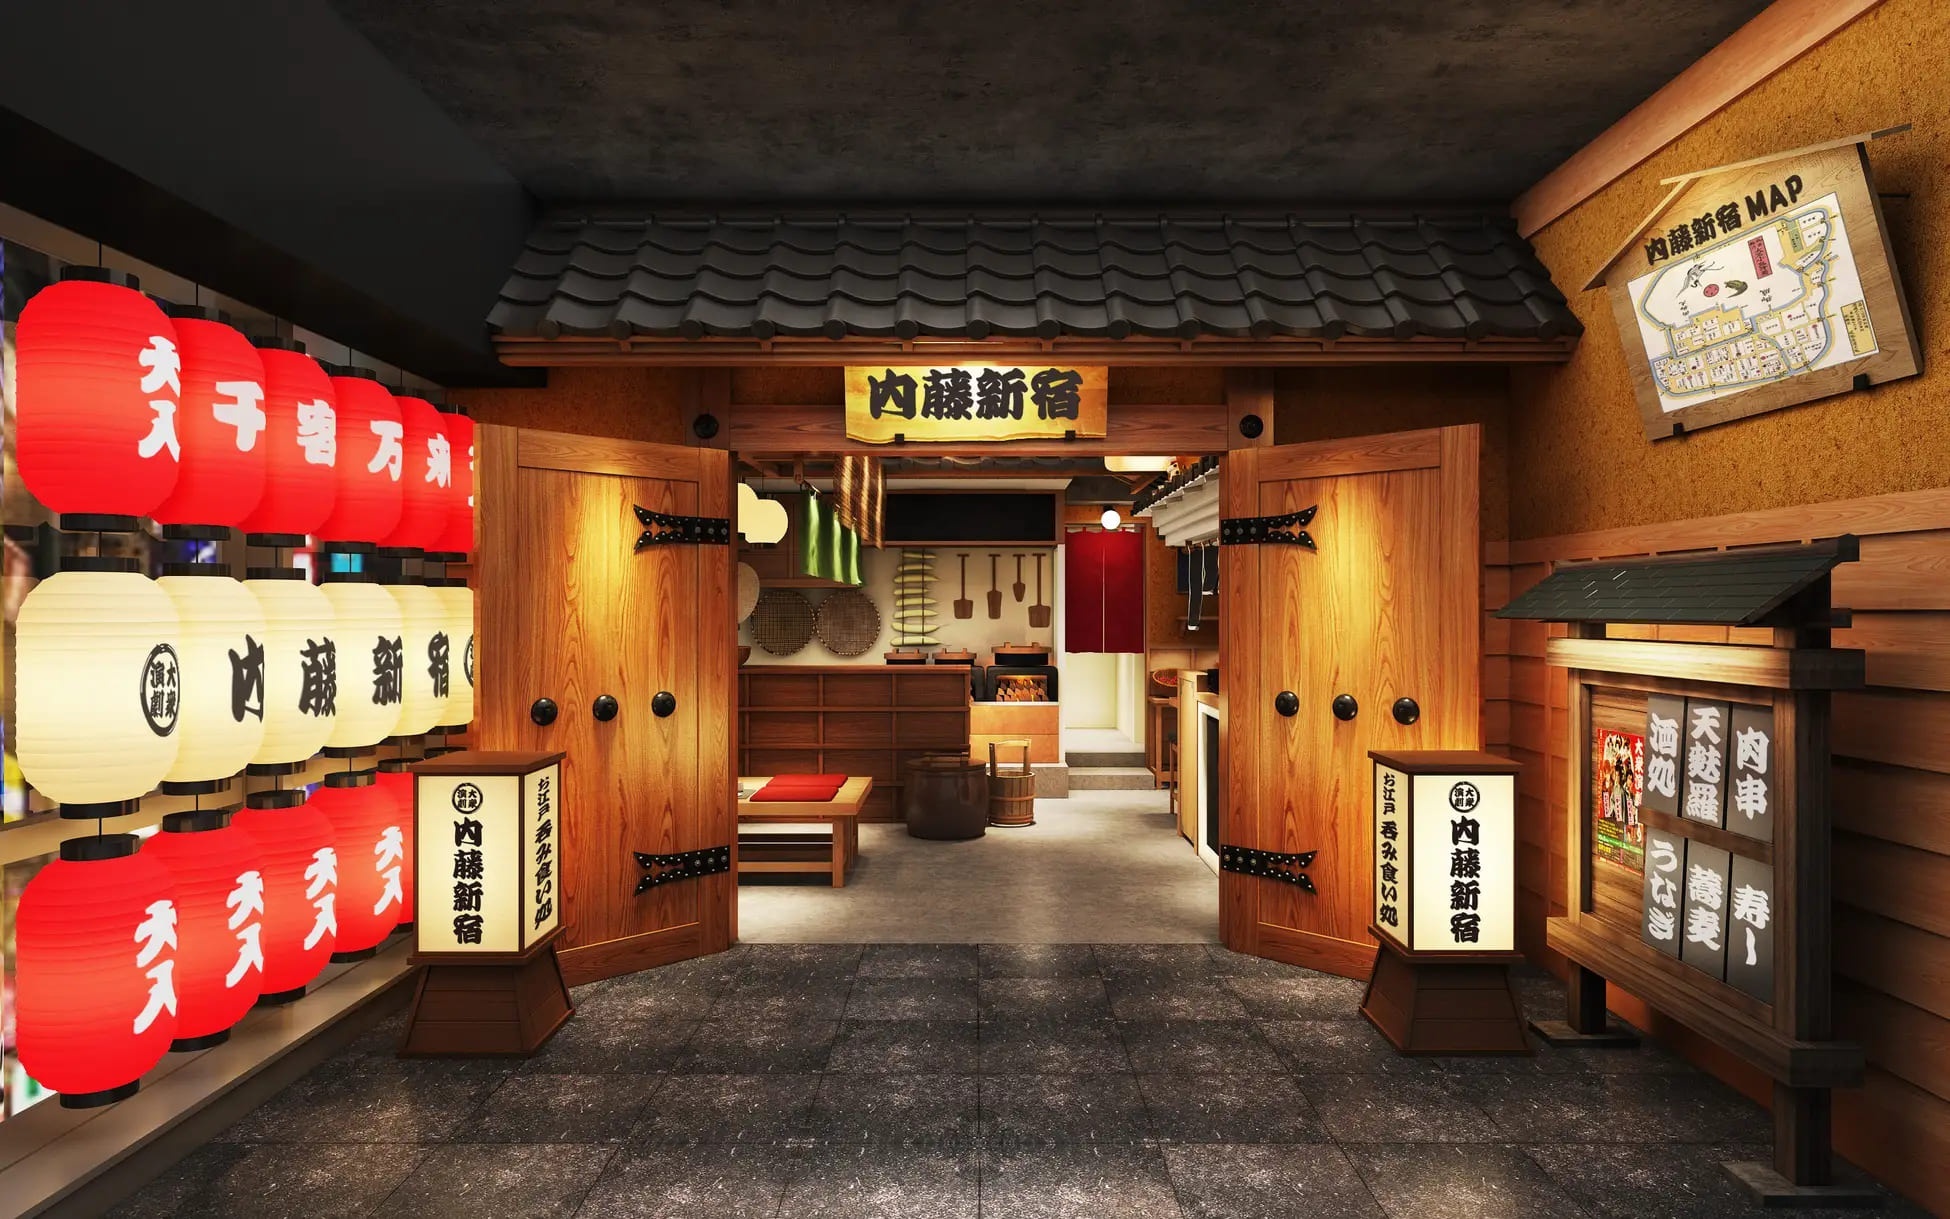 「ハナミチ東京 歌舞伎町」に飲食フロアがオープン